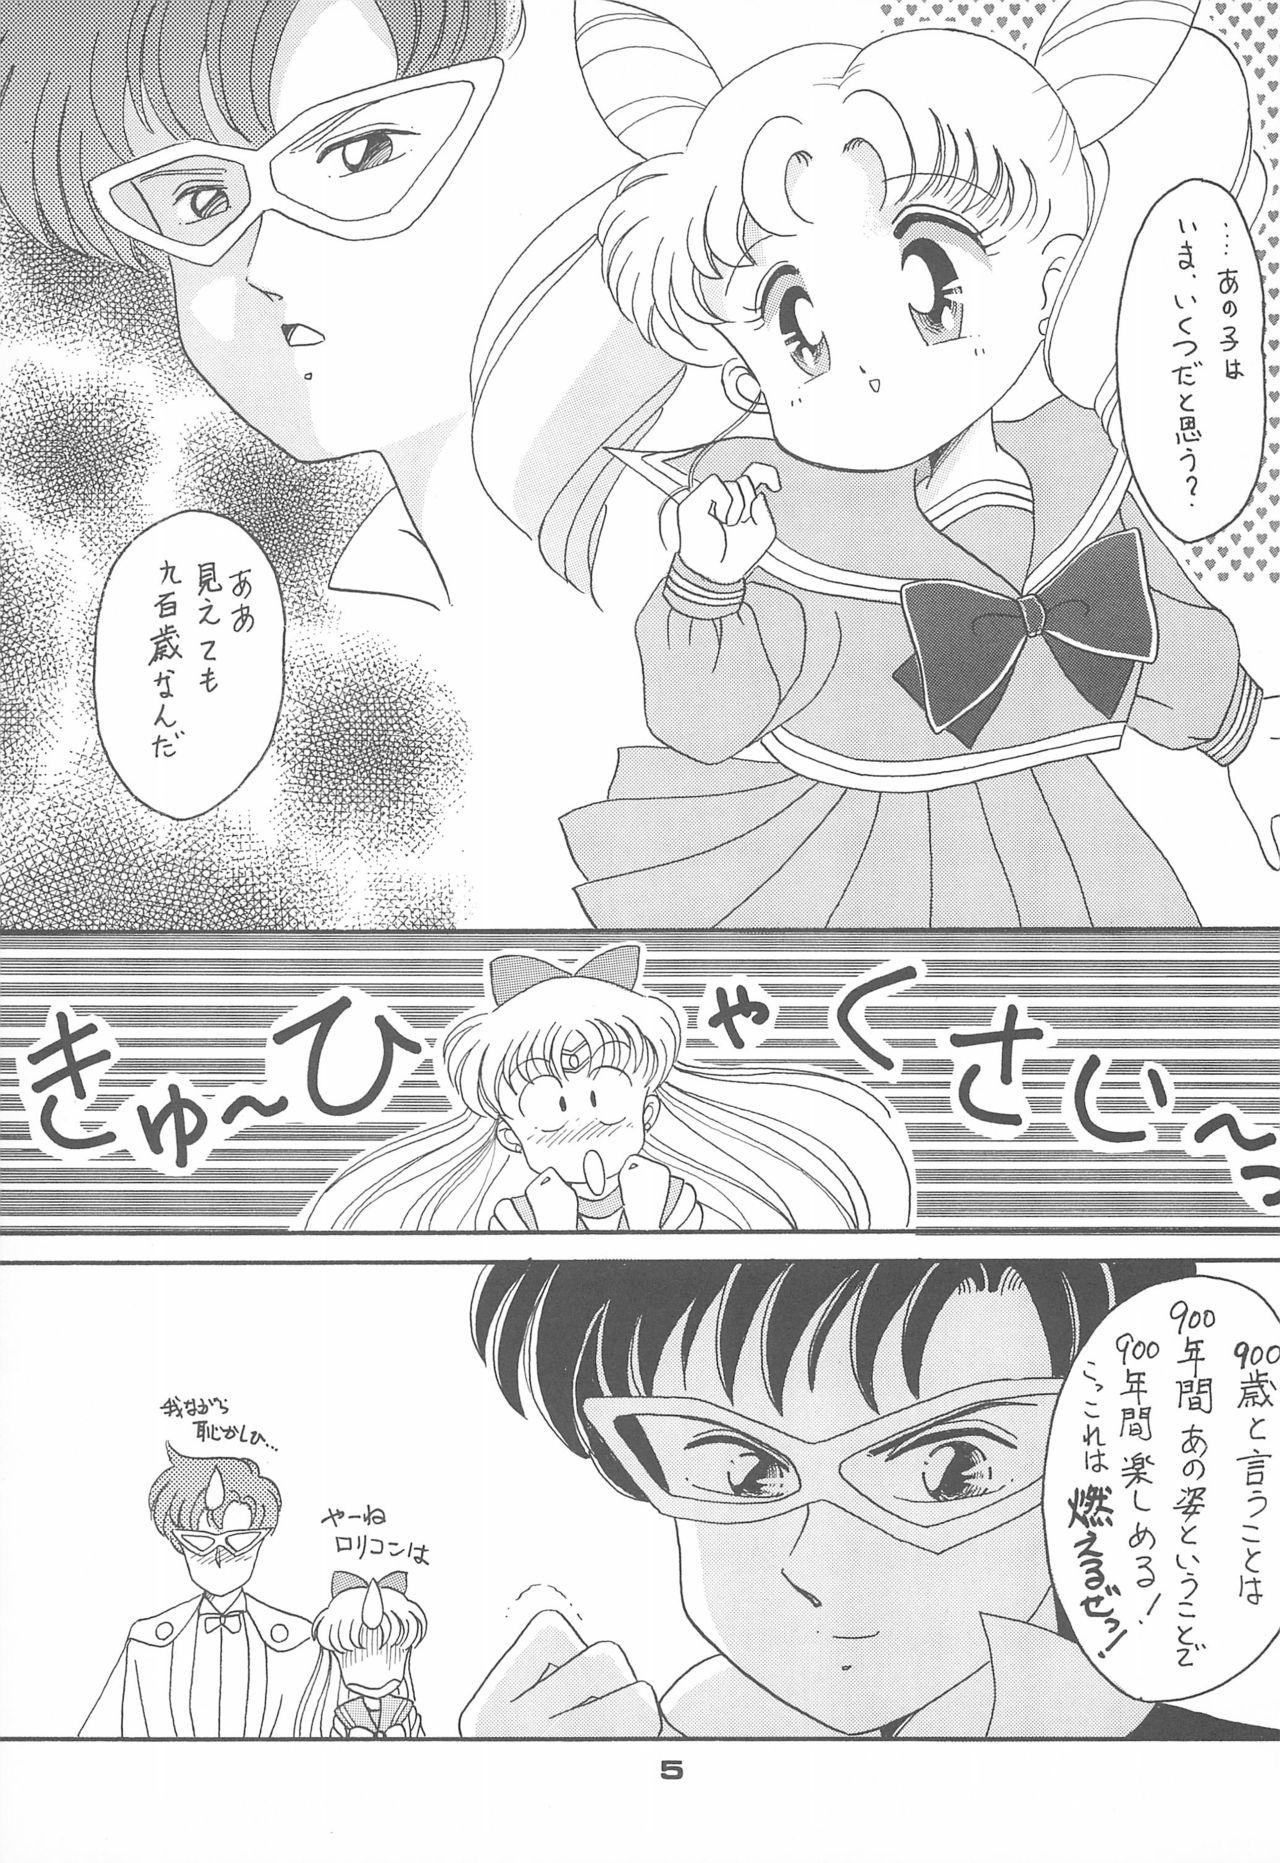 Exibicionismo Ponponpon 4 - Sailor moon Free Amatuer Porn - Page 7